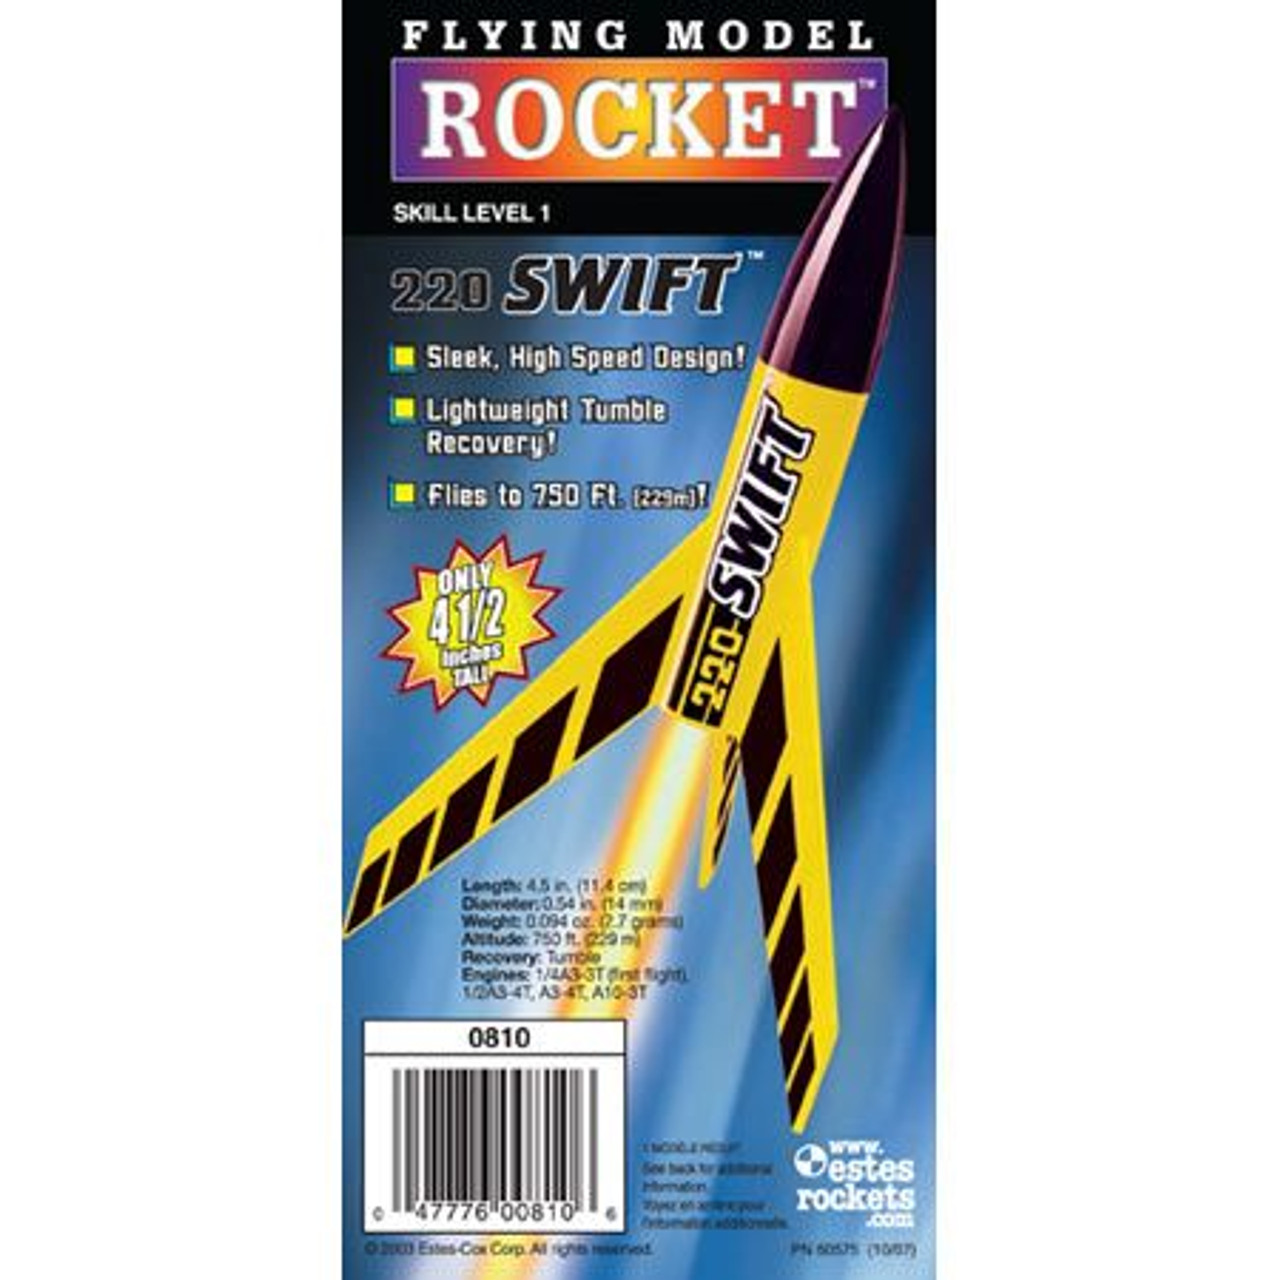 220 Swift Mini Rocket Kit Skill Level 1